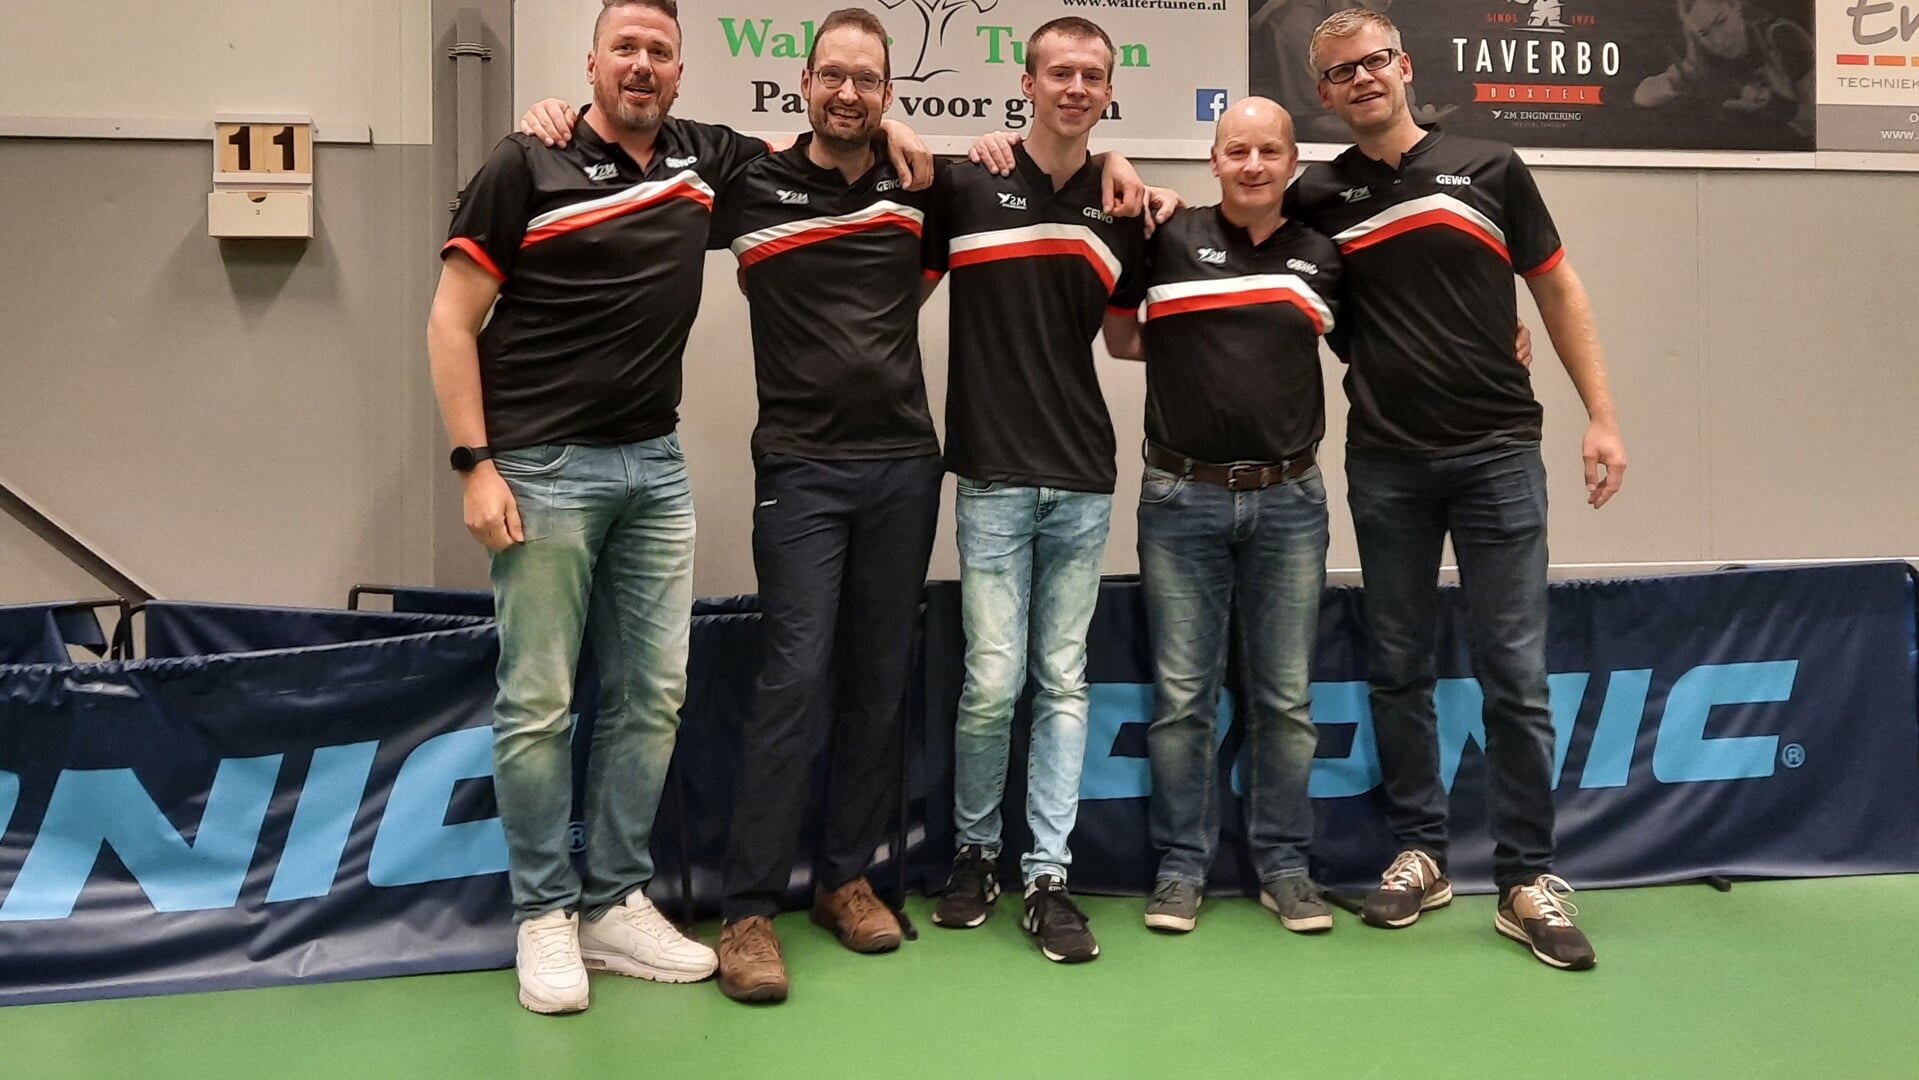 Het kampioensteam Taverbo 8 met van links naar rechts: Peter de Rooij, Wilbert van Ruremonde, Lars de Laat, Erik van der Schoot en Walter Peltenburg.